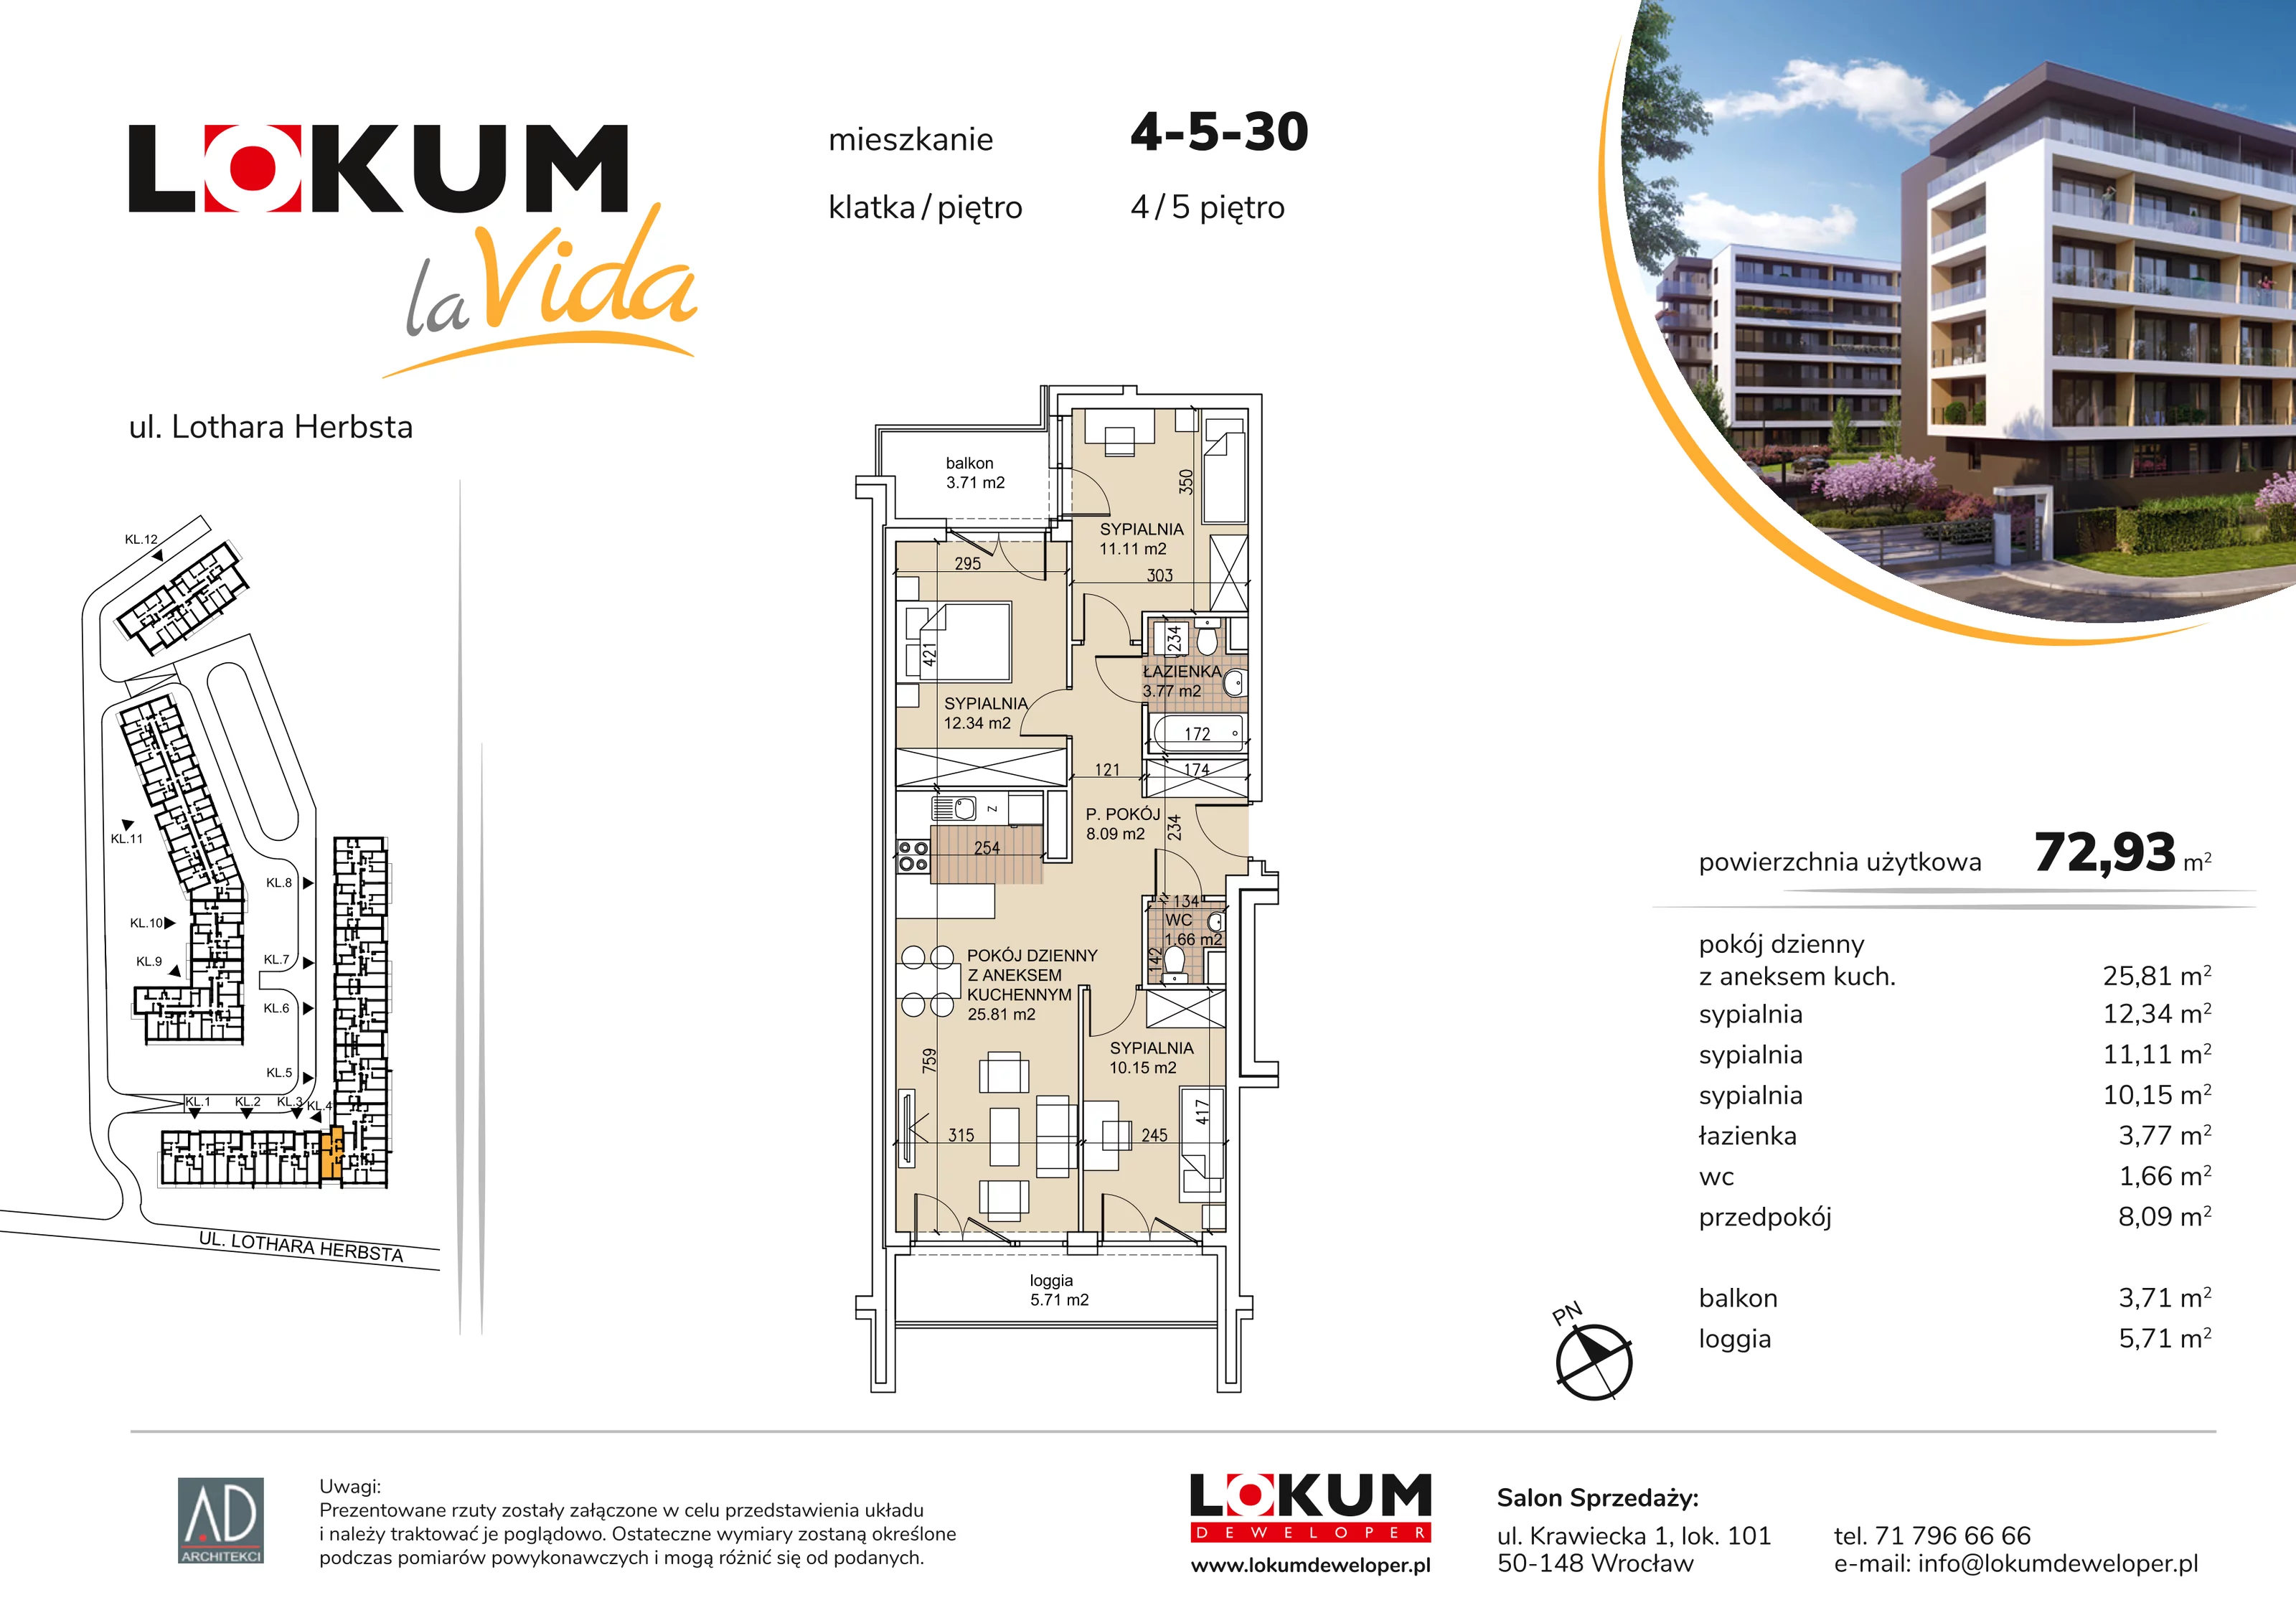 Mieszkanie 72,93 m², piętro 5, oferta nr 4-5-30, Lokum la Vida, Wrocław, Sołtysowice, ul. Lothara Herbsta